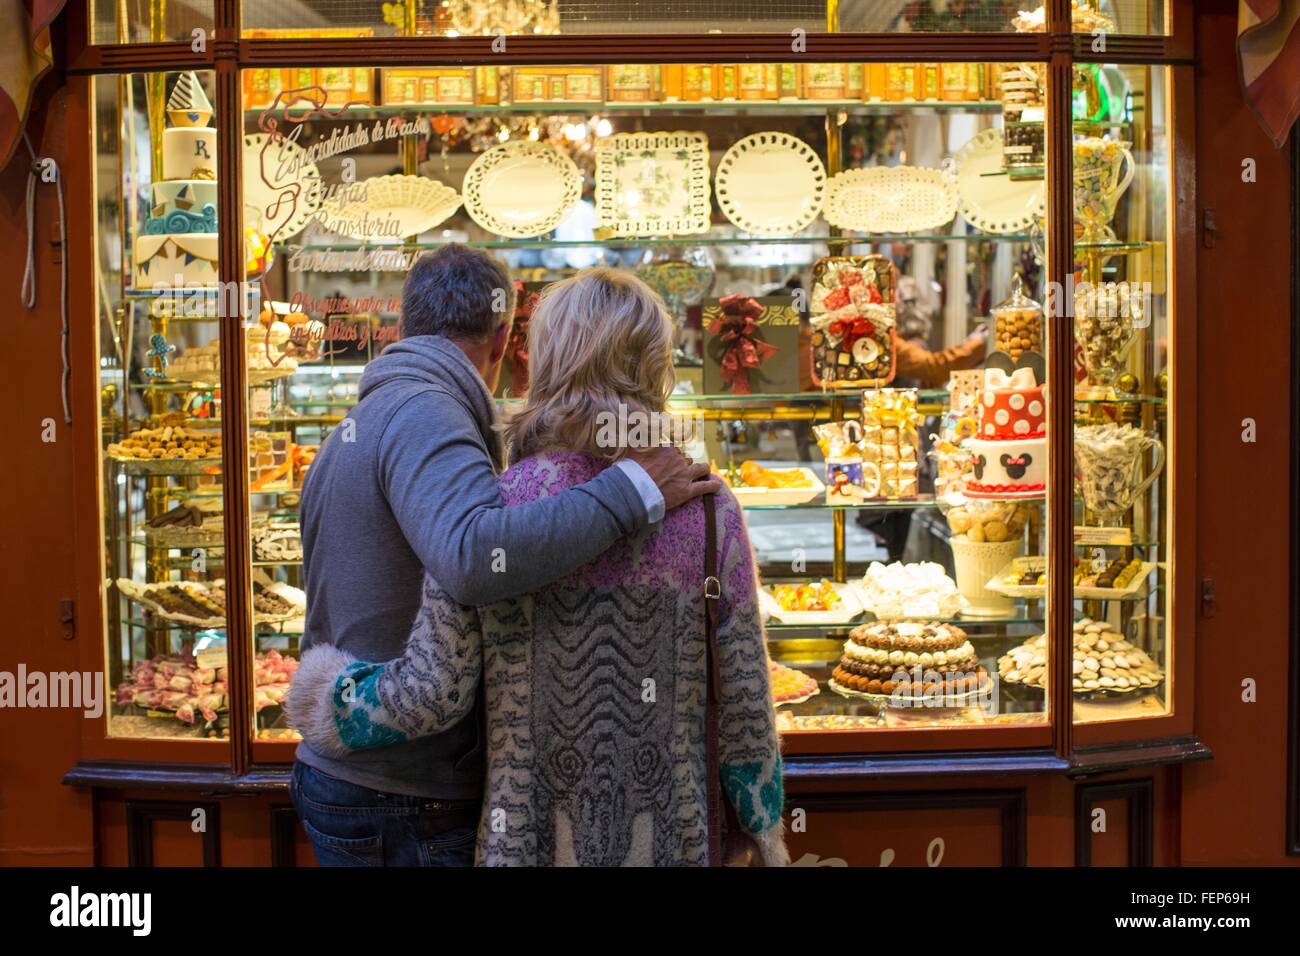 Vue arrière du couple romantique à cake shop window, Majorque, Espagne Banque D'Images